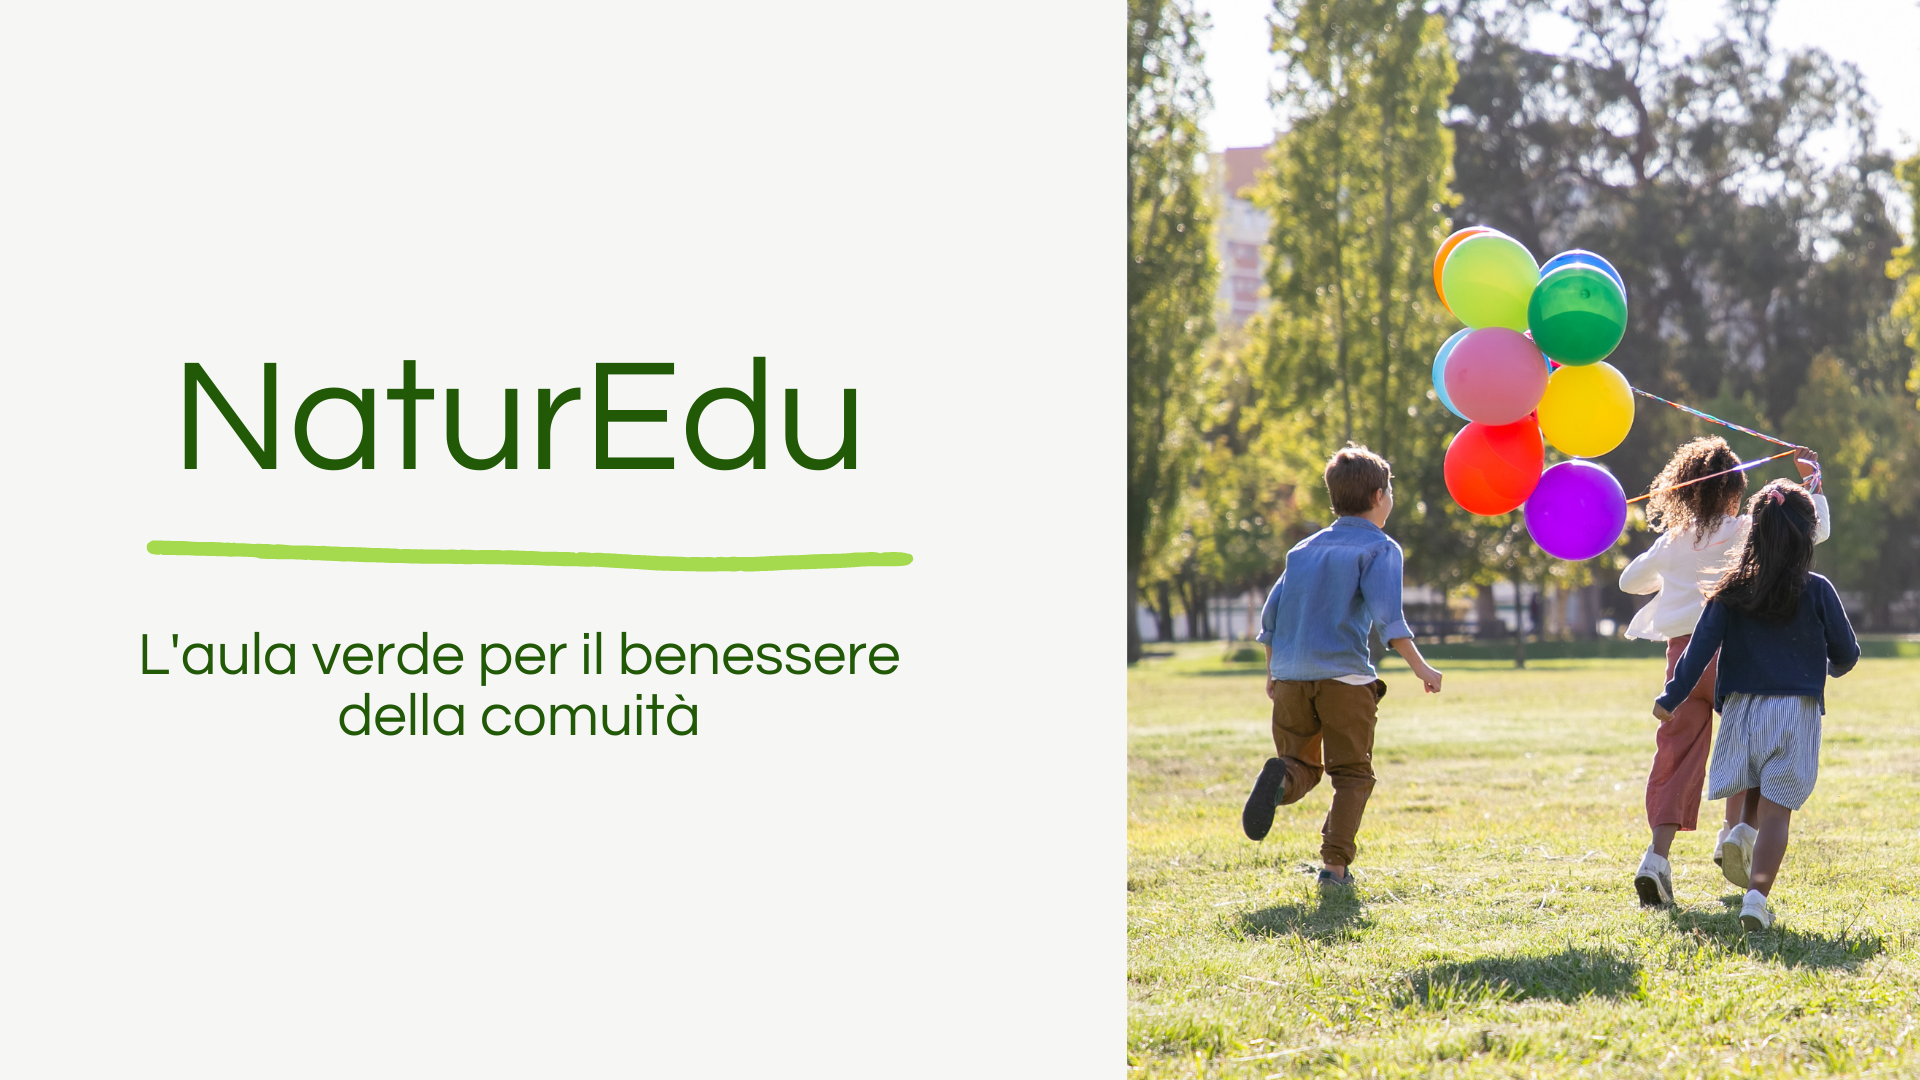 NaturEdu - riportiamo la didattica all'aperto nelle scuole primarie di Padova